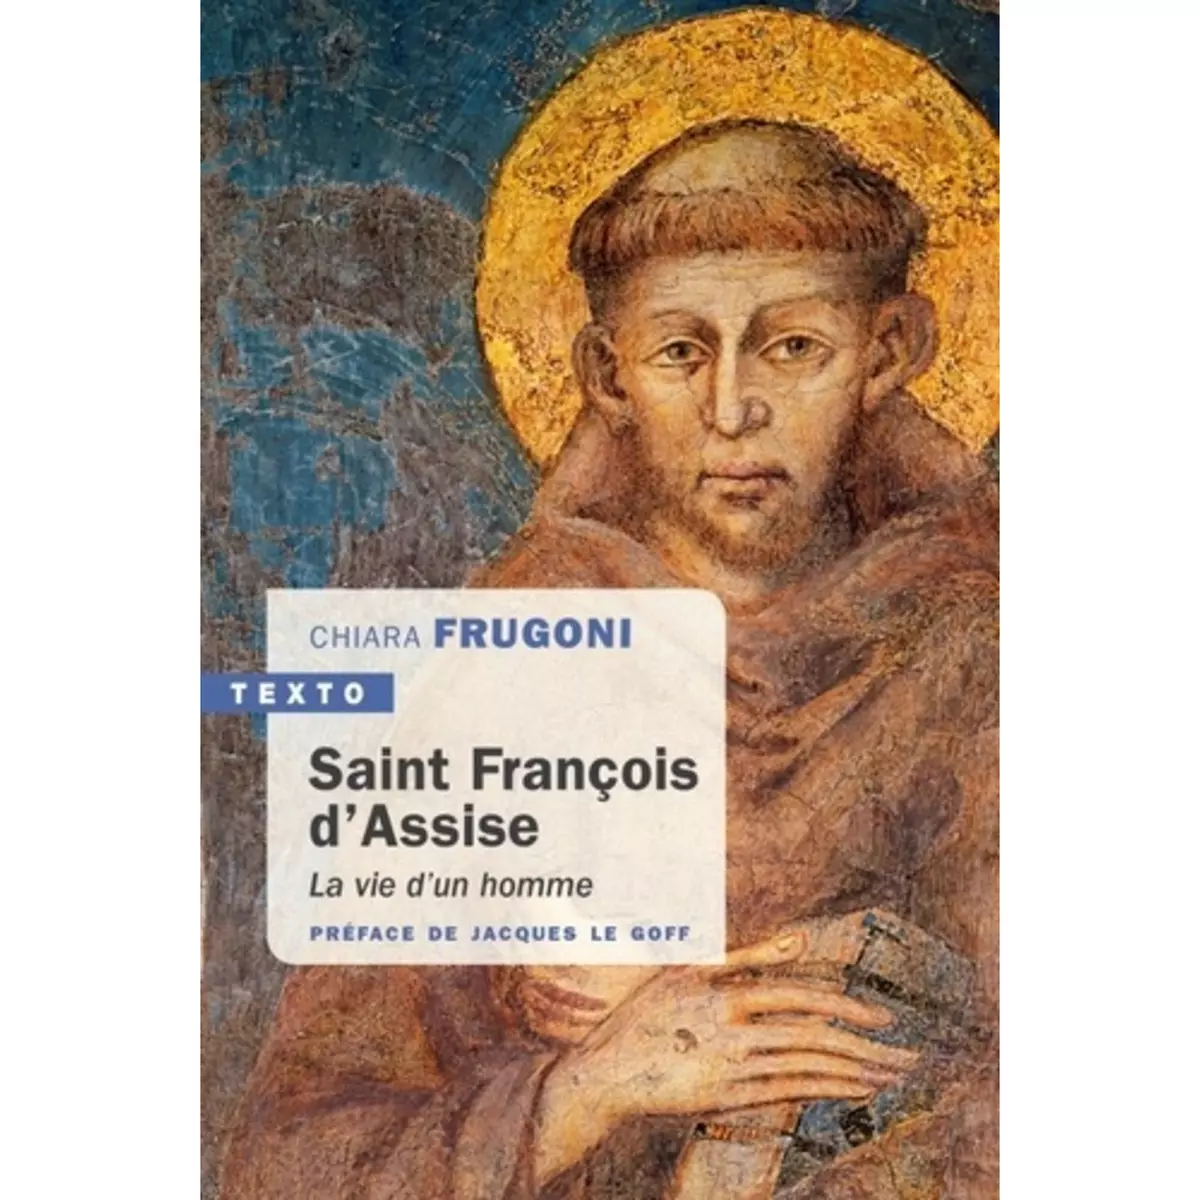  SAINT FRANCOIS D'ASSISE. LA VIE D'UN HOMME, Frugoni Chiara